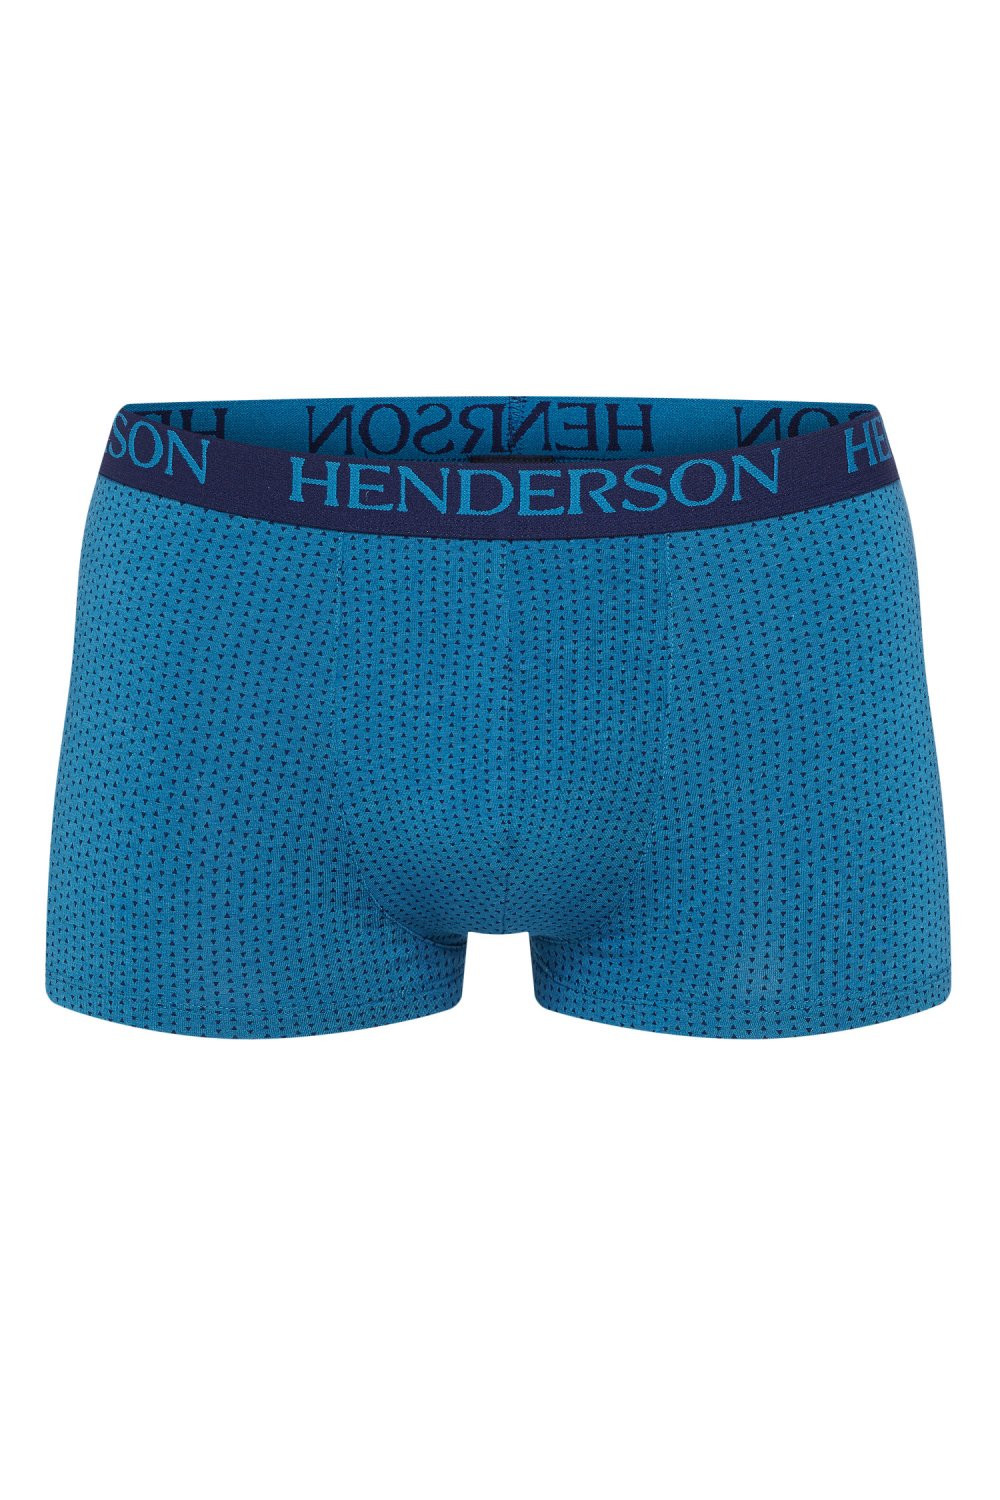 Pánské boxerky 37797 - HENDERSON tmavě modrá XXL